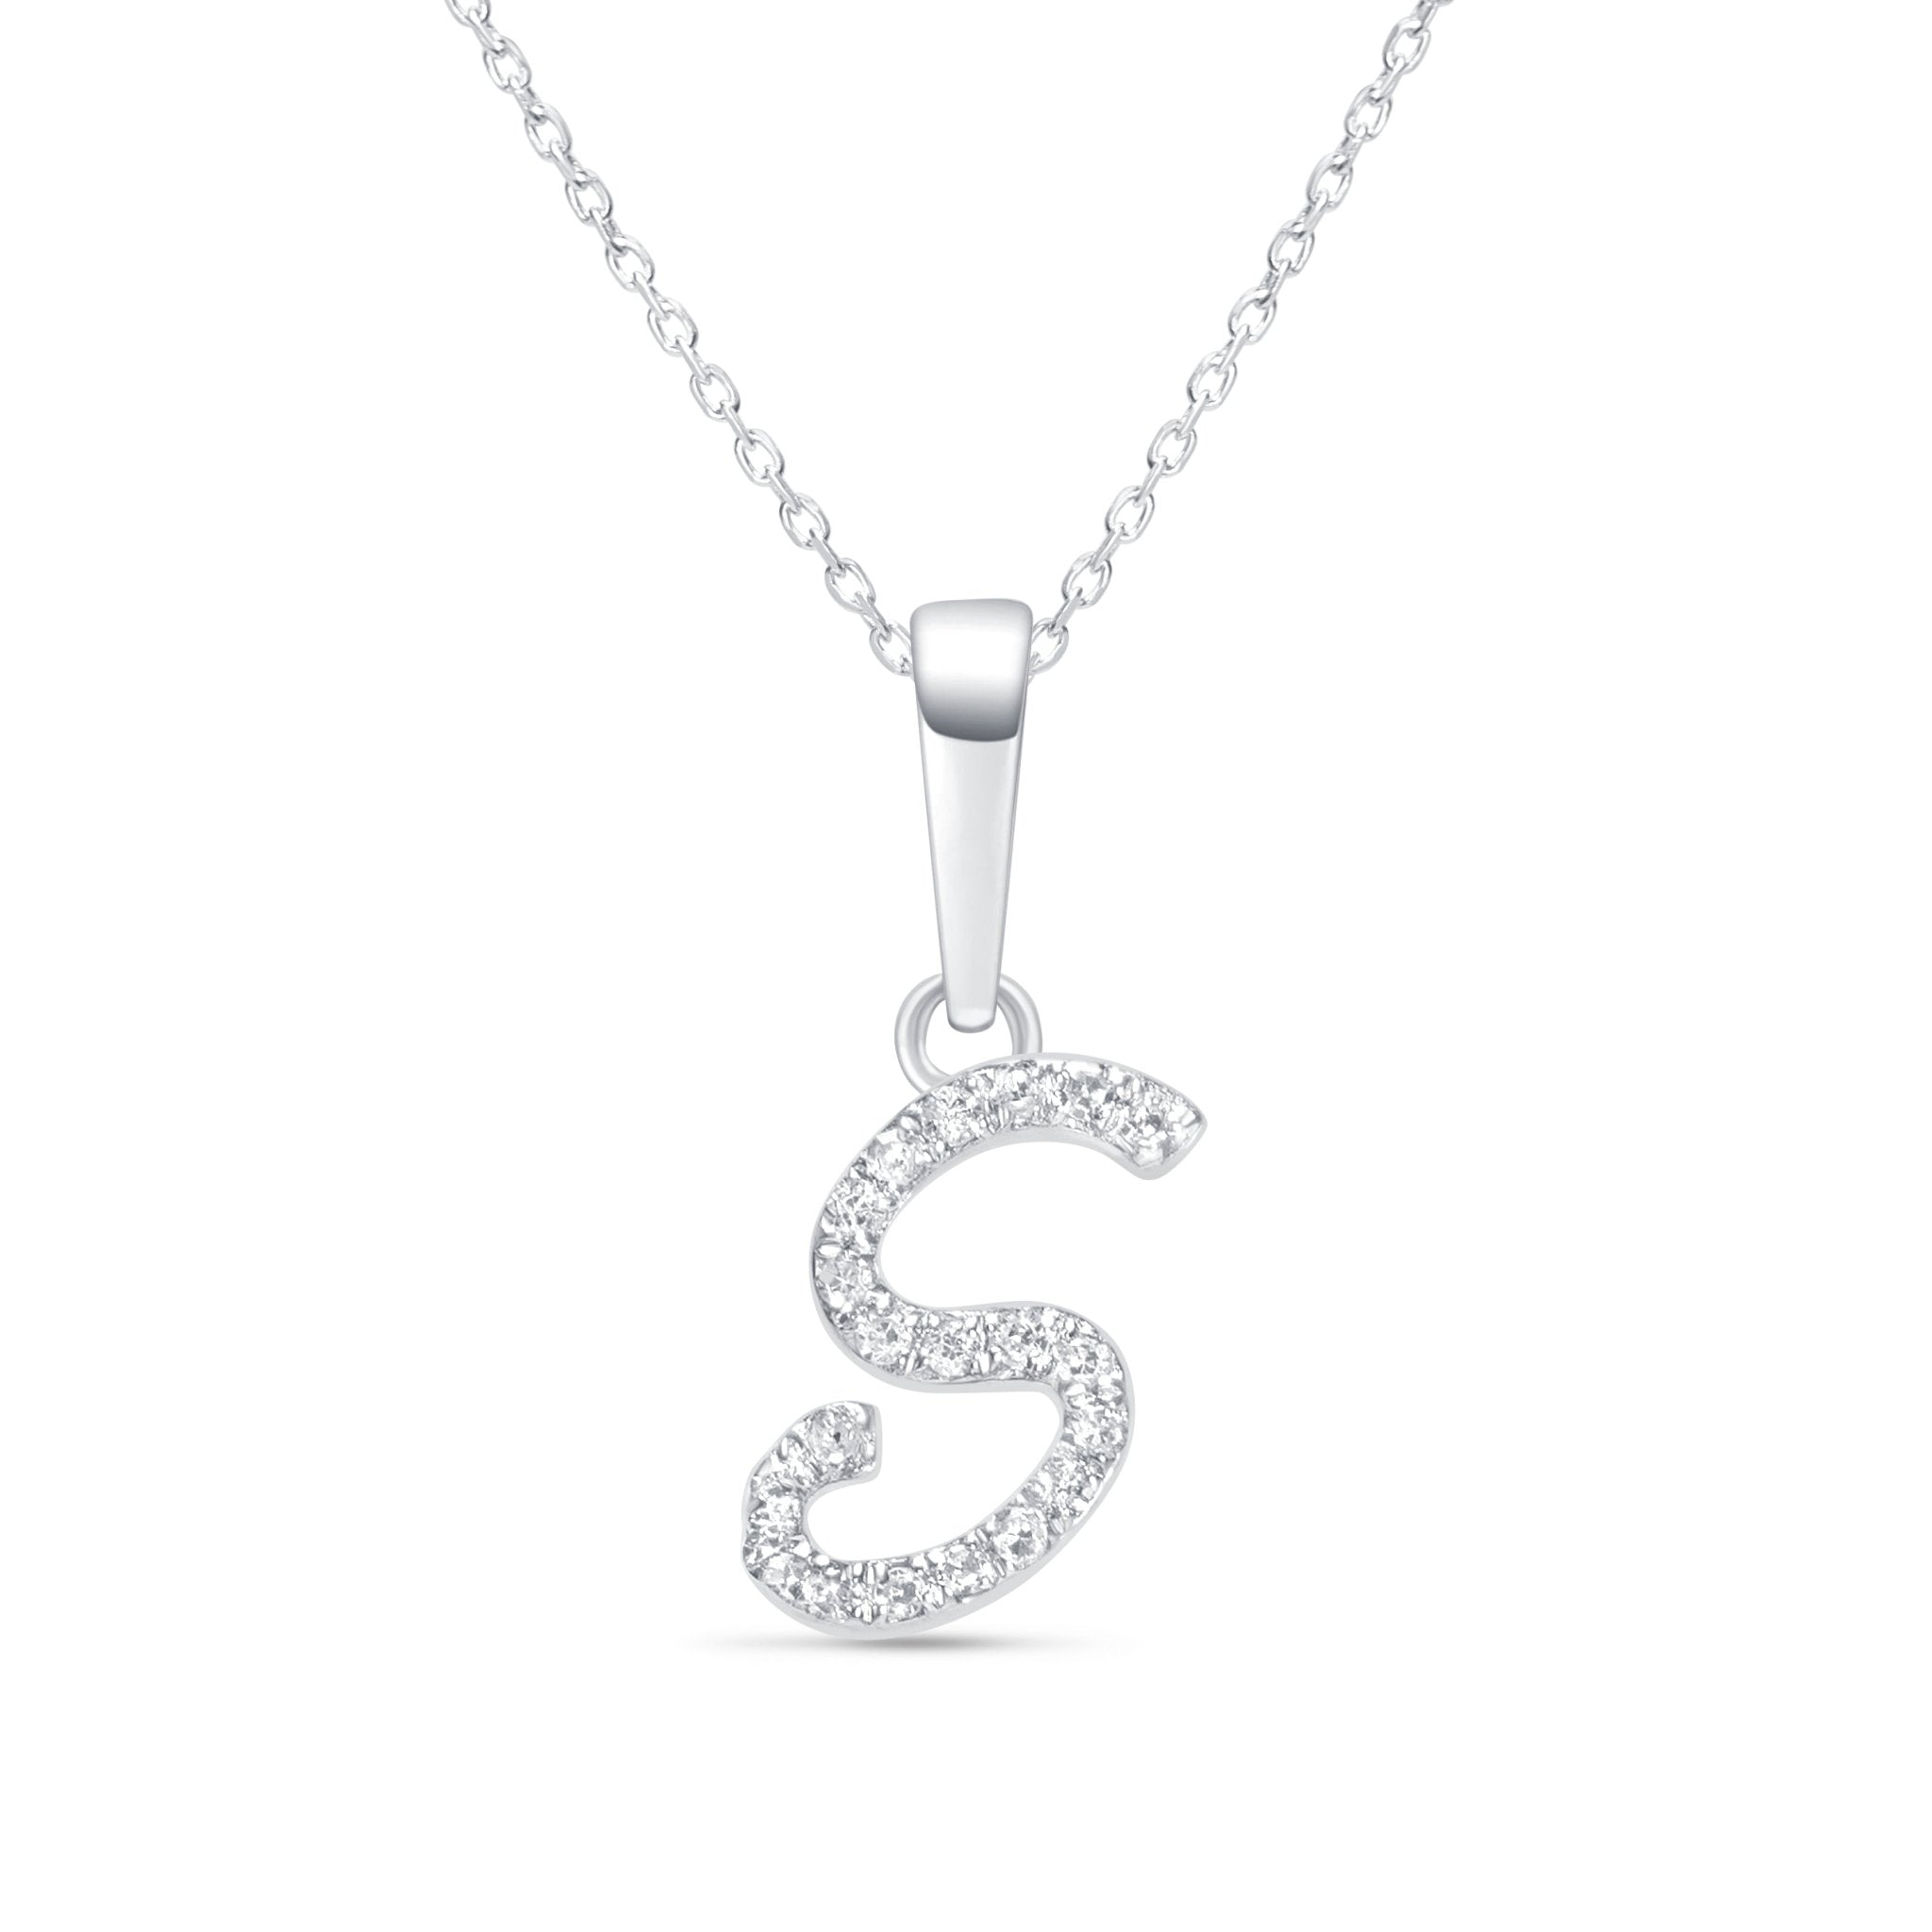 Cursive Diamond Initial Necklace - S Necklaces Estella Collection #product_description# 18557 14k Diamond Gemstone #tag4# #tag5# #tag6# #tag7# #tag8# #tag9# #tag10# 14k White Gold